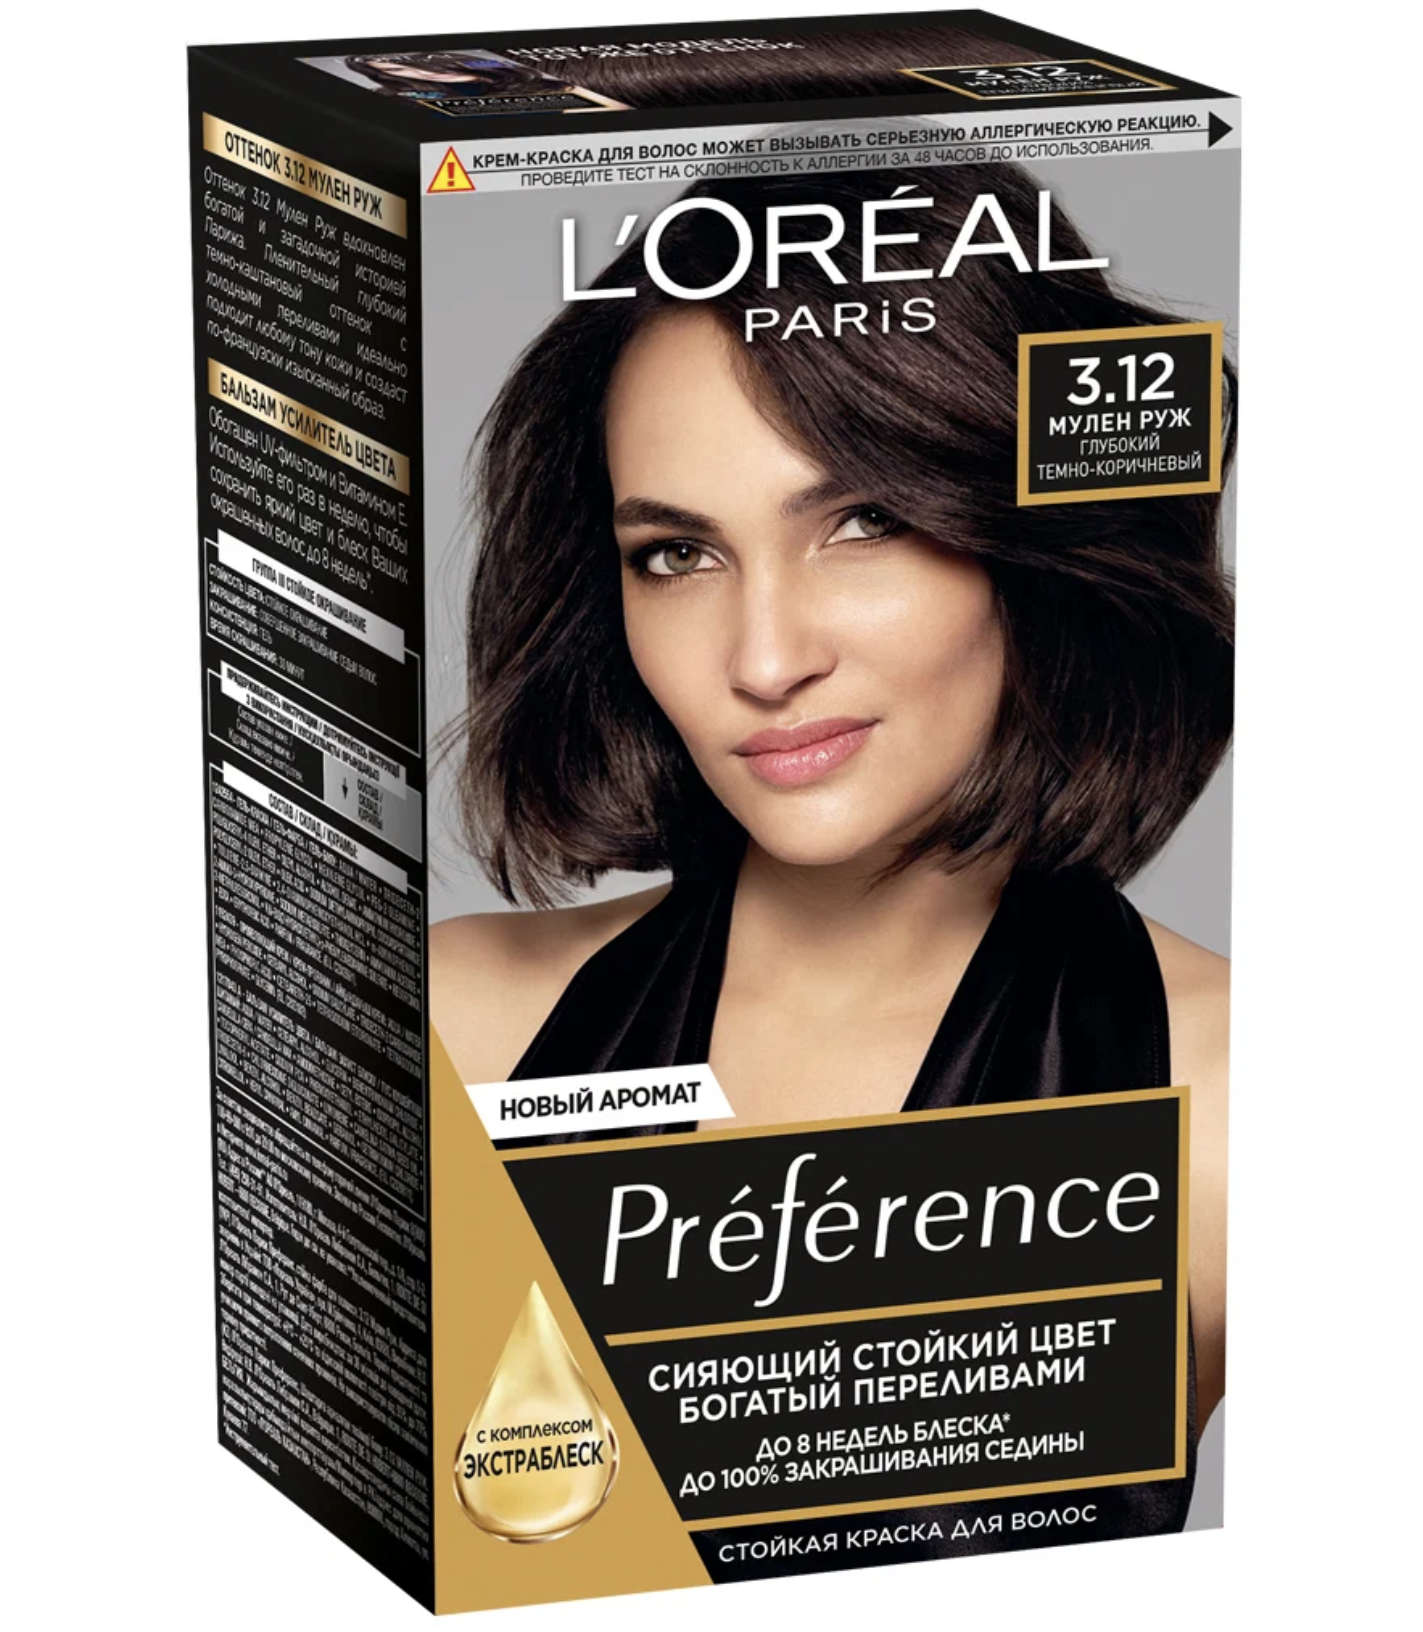 Краска для волос L'Oreal Preference Recital «Монмартр», тон 4.12, глубокий коричневый